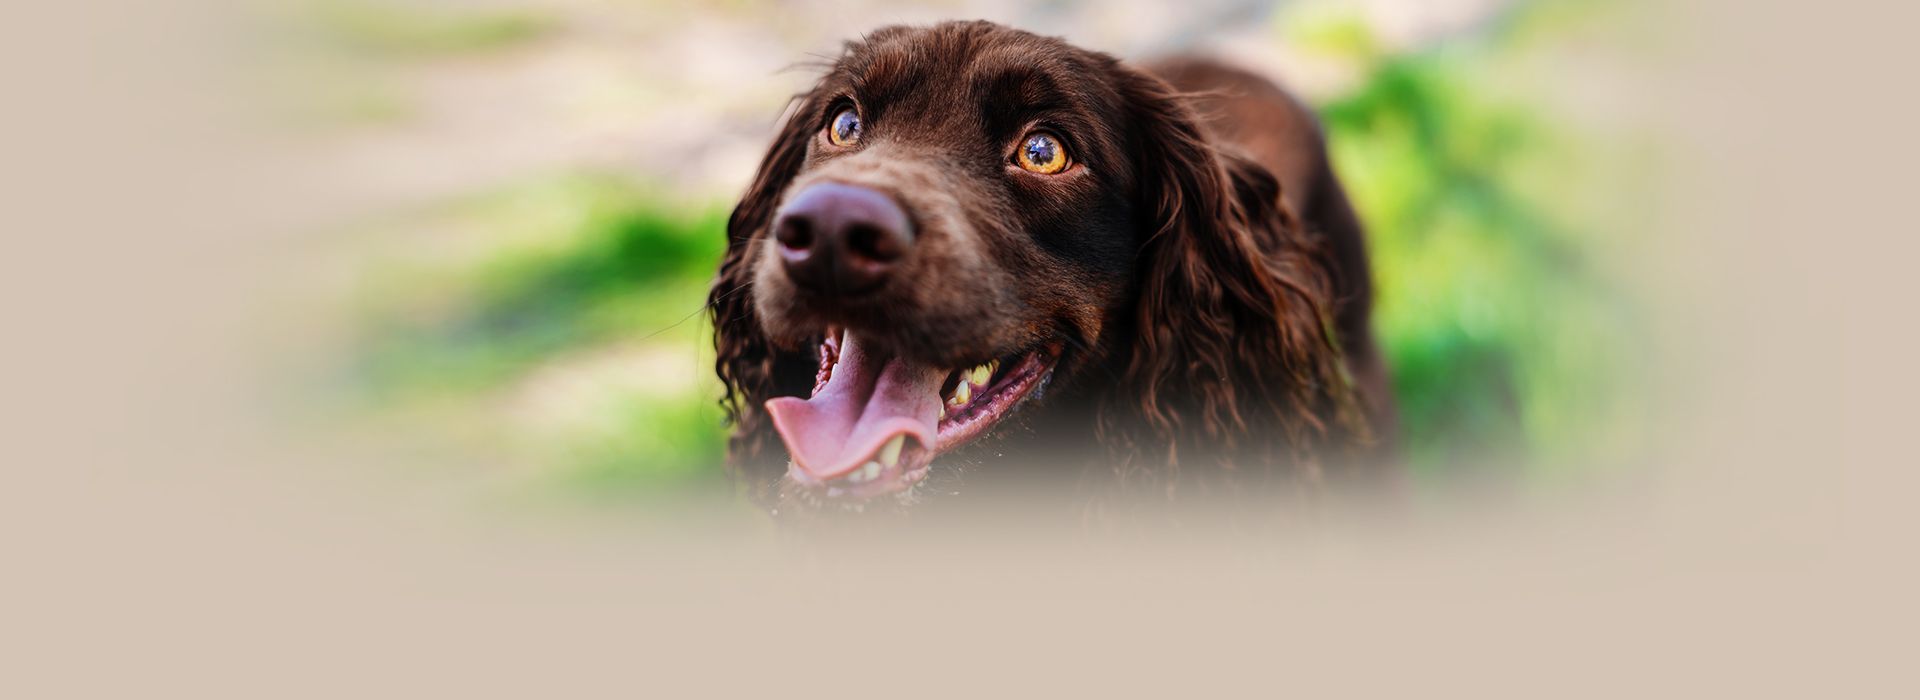 smiling brown cocker spaniel dog